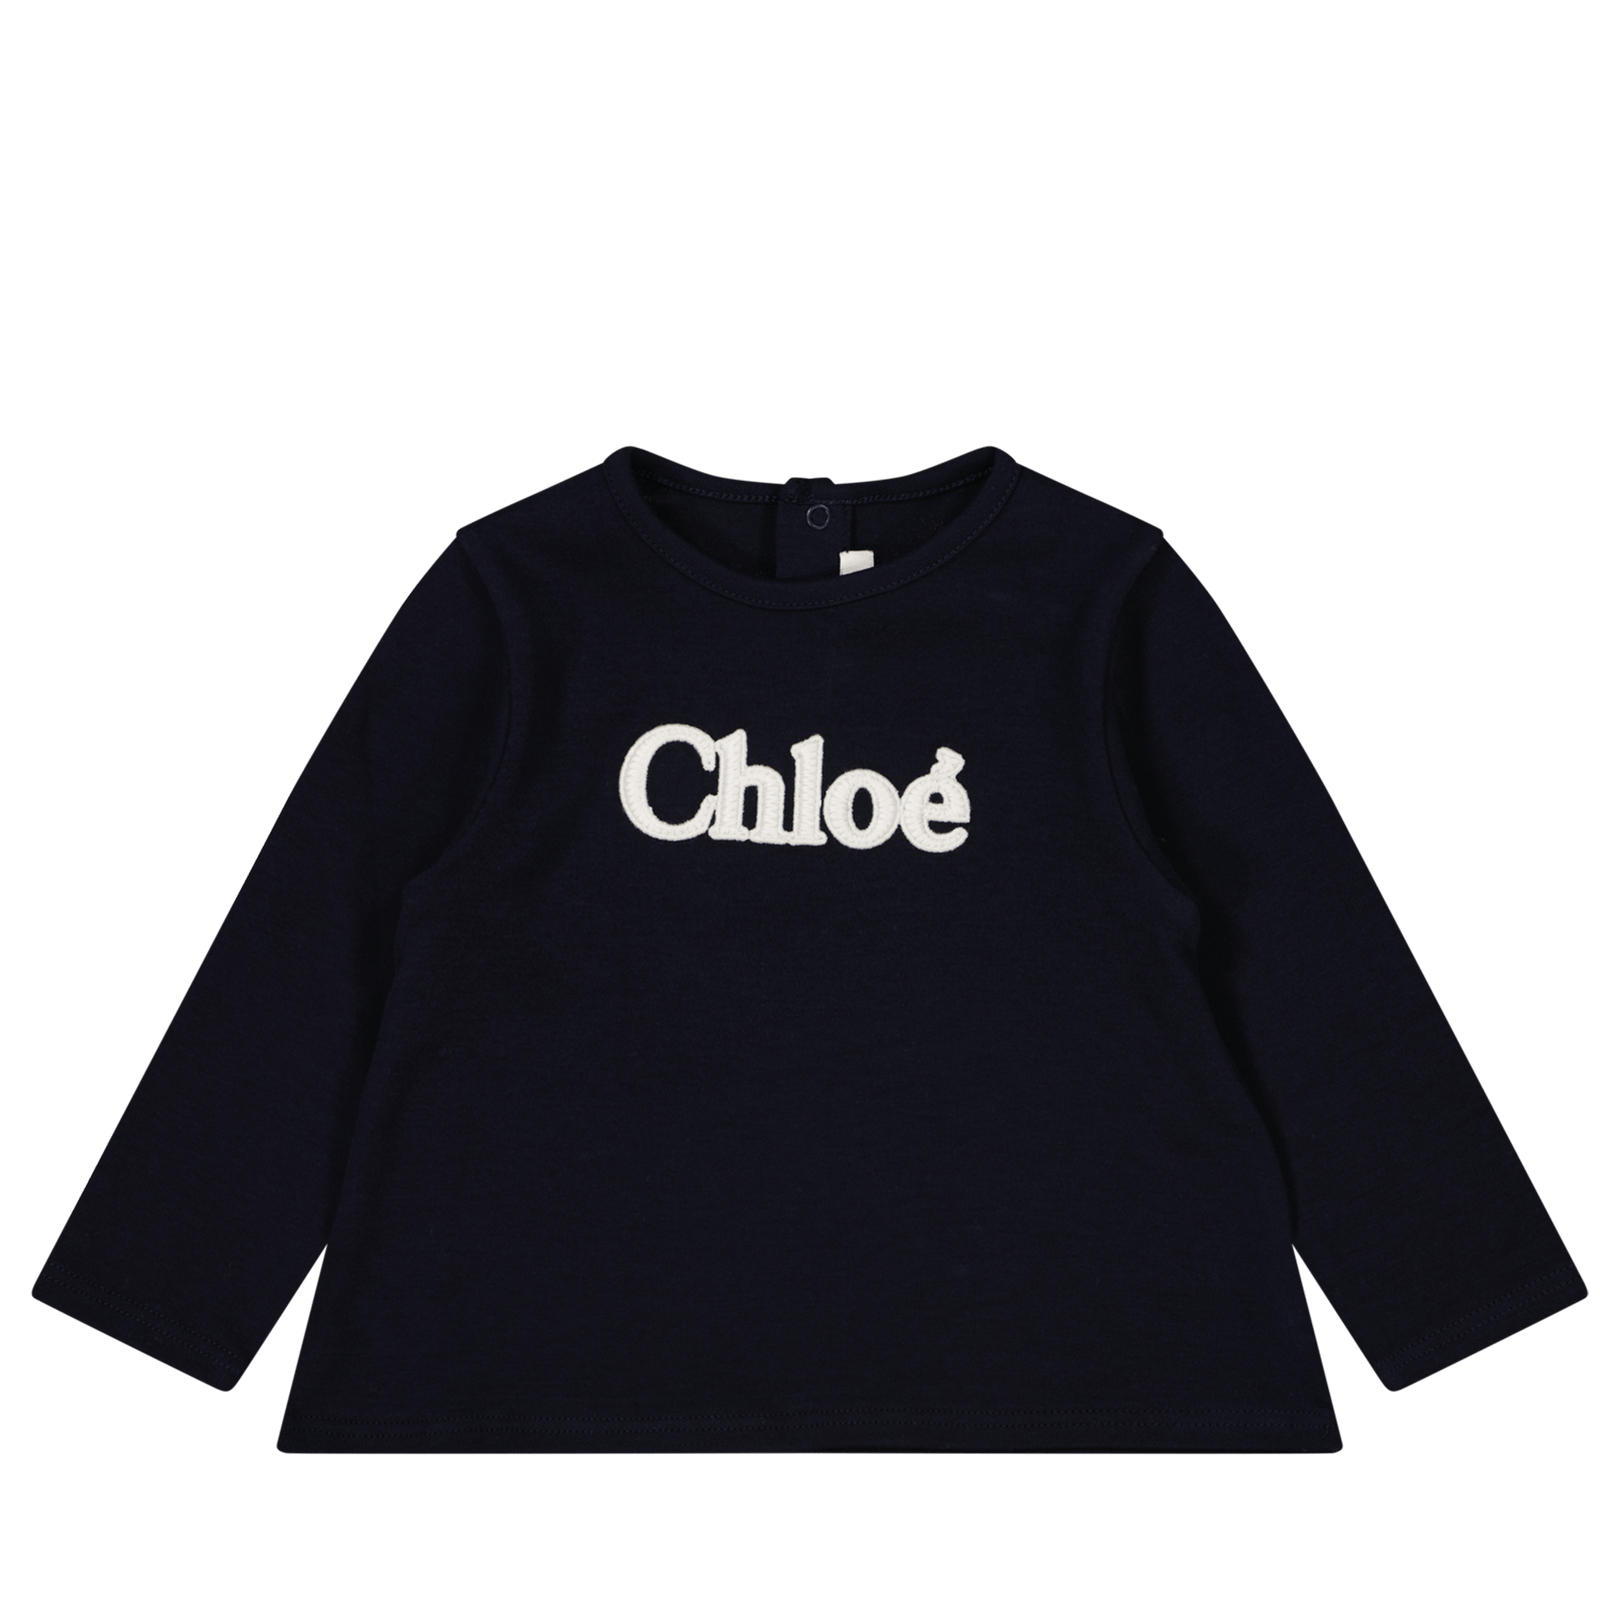 Chloe Baby Girls T-Shirt Navy